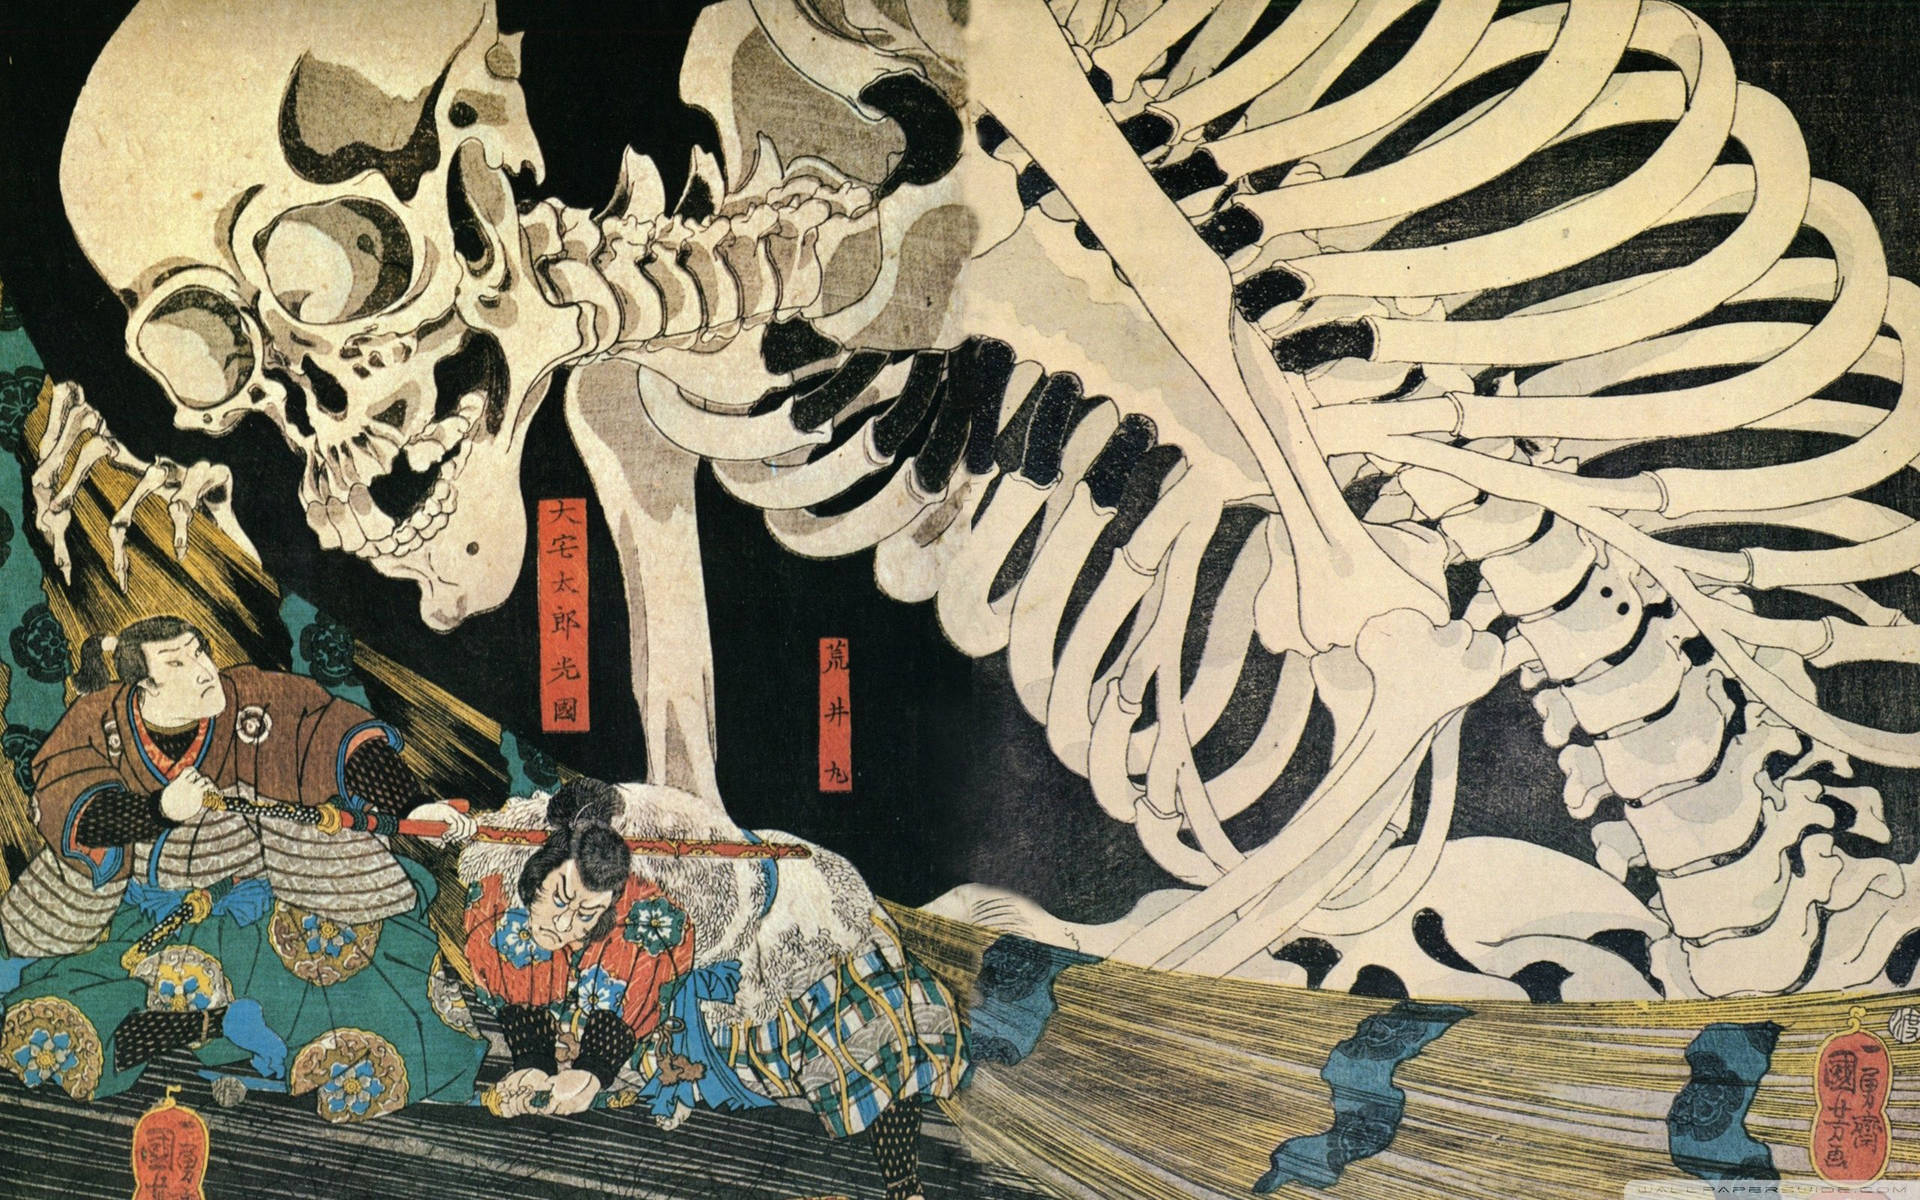 Japanese Samurai Against Skeleton